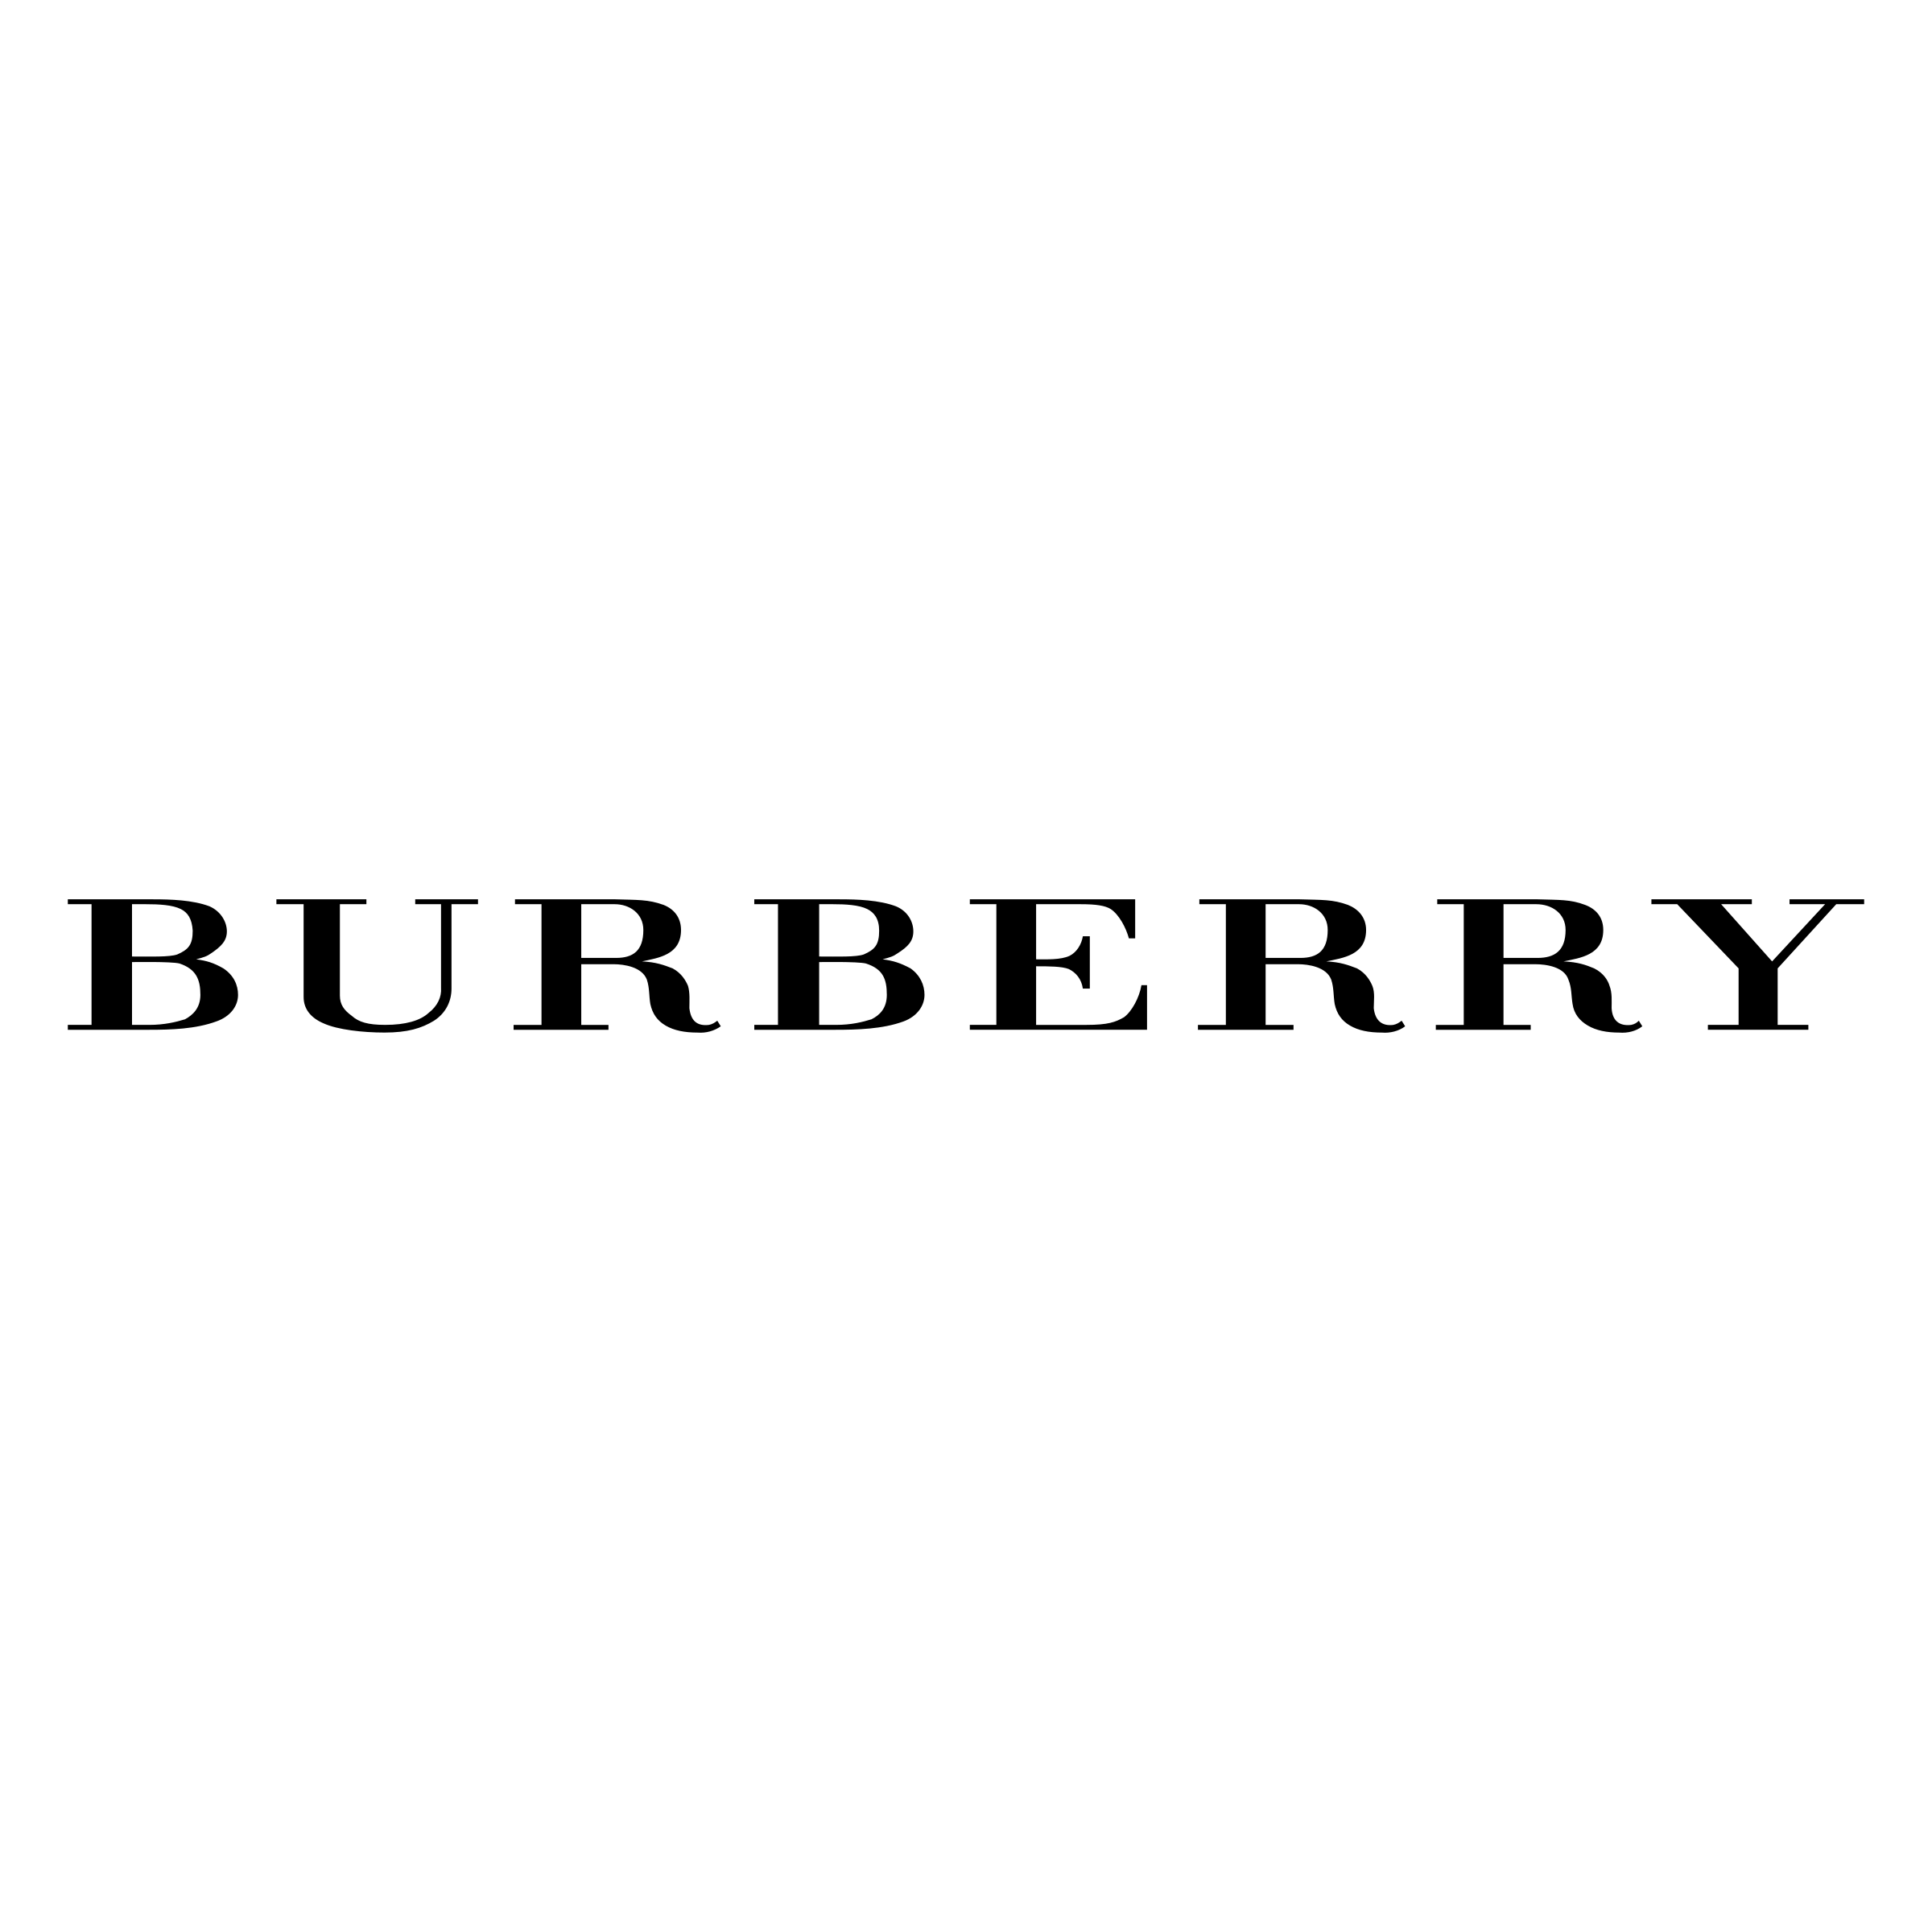 Burberry Logo Png - Burberry 